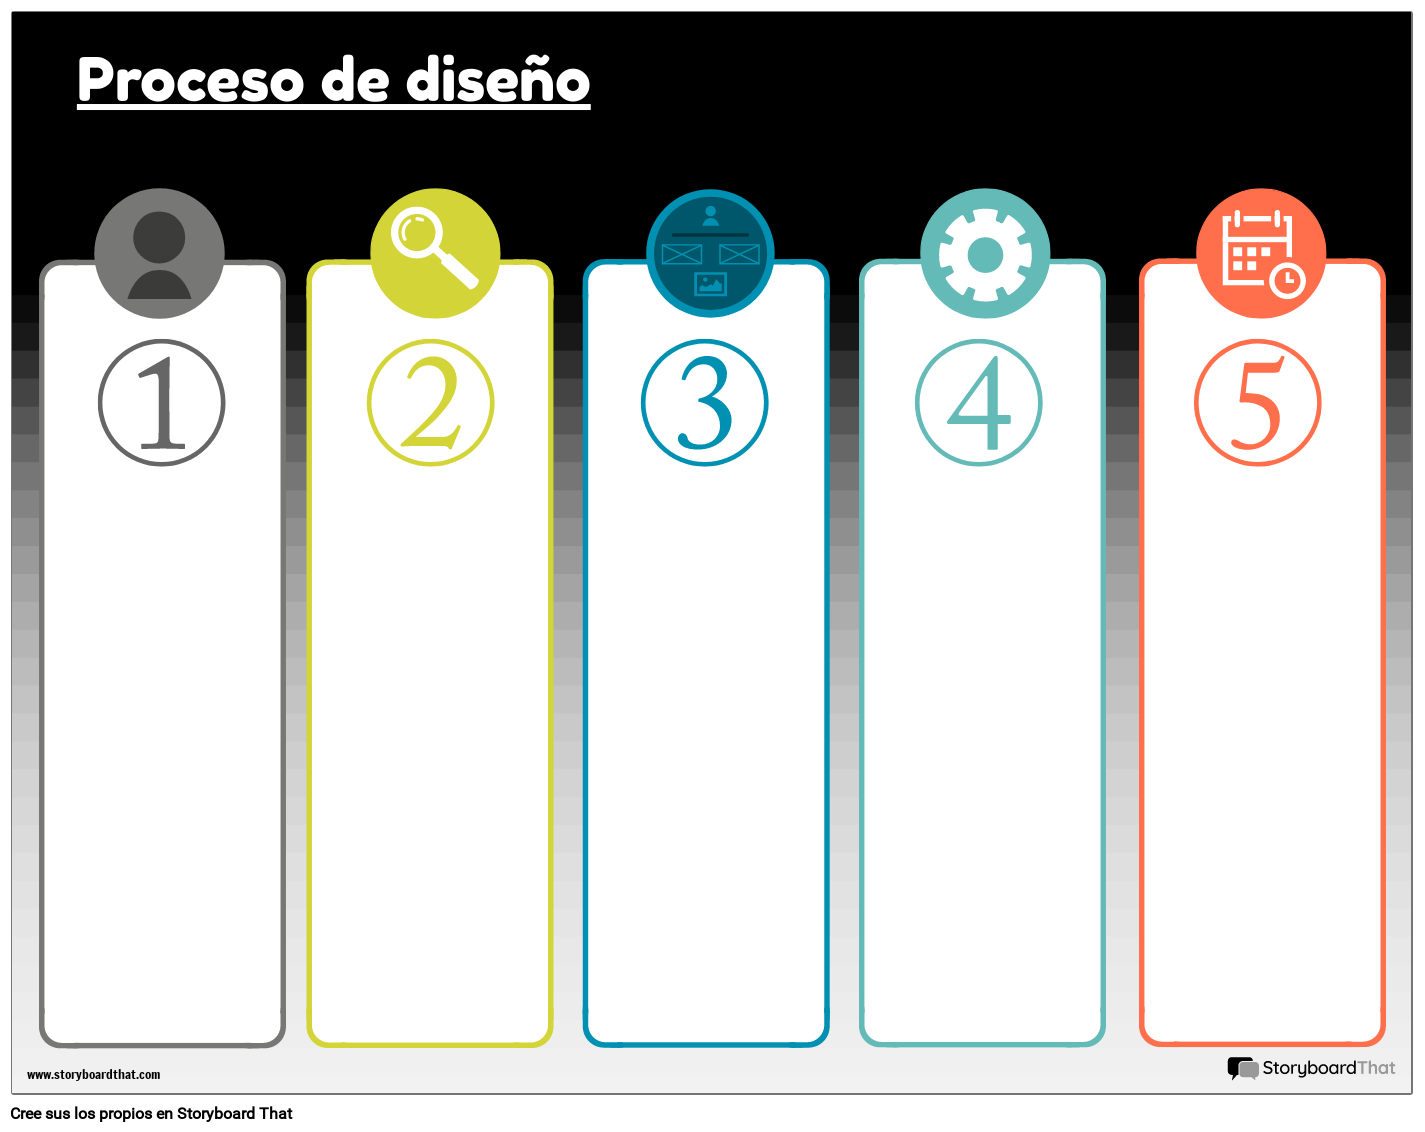 proceso-de-dise-o-1-storyboard-von-es-examples